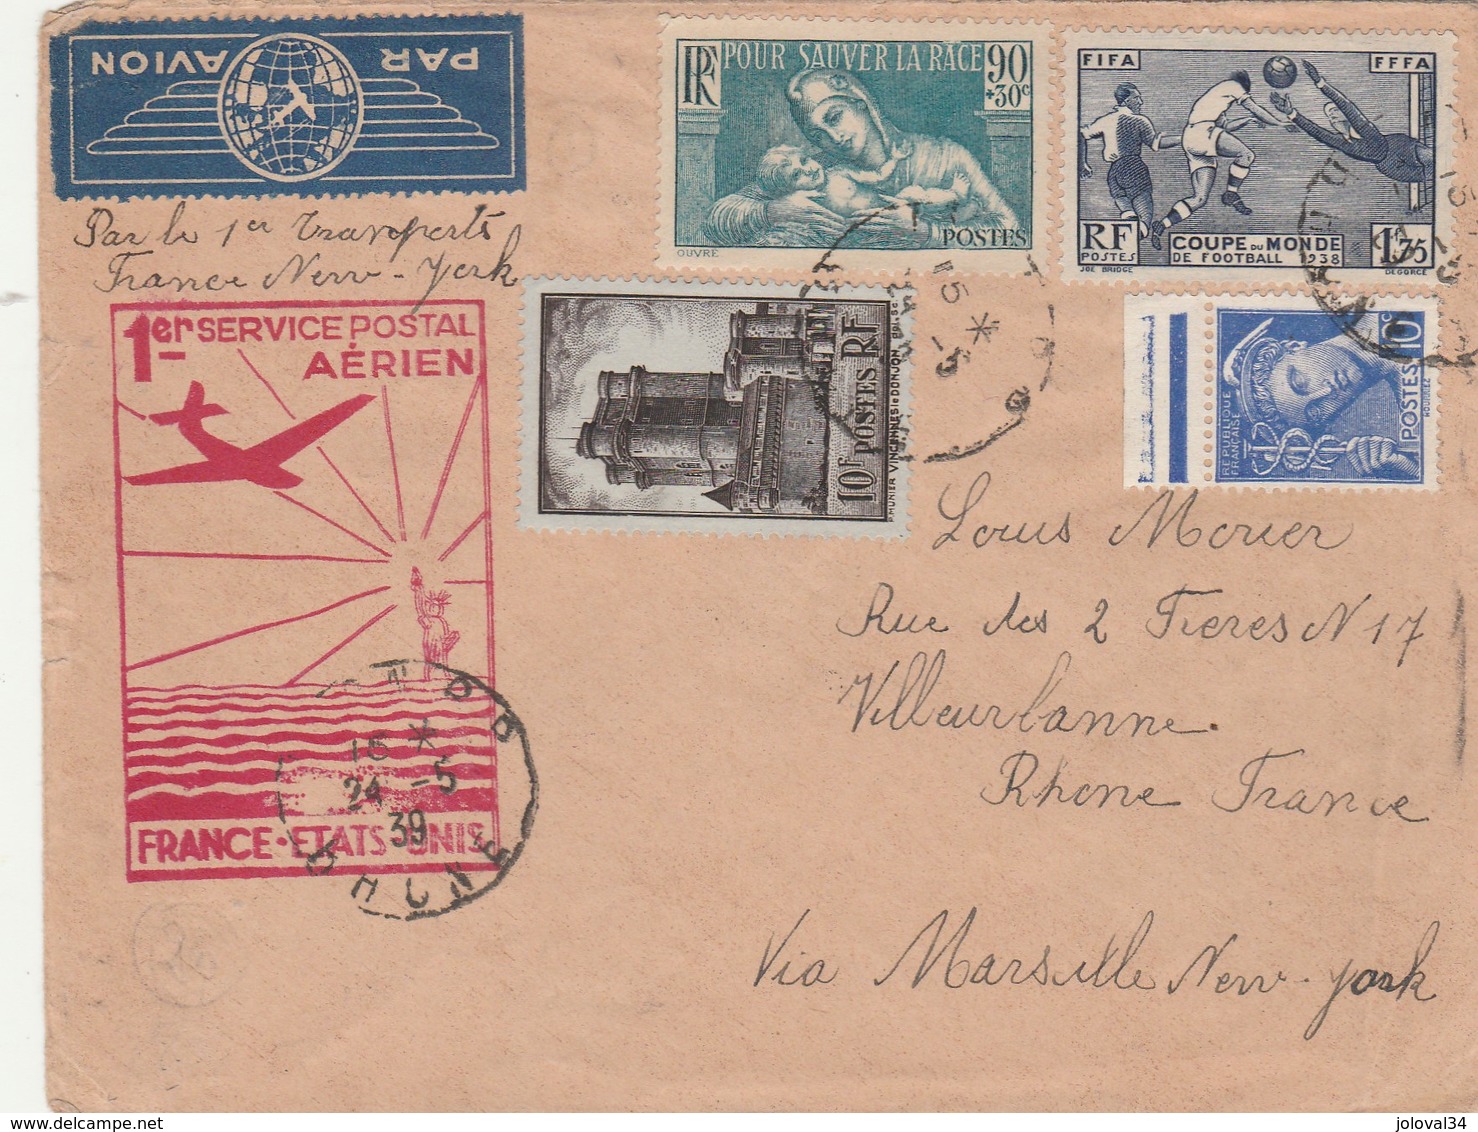 Poste Aérienne 1 Er Service Postal Aérien France Etats Unis 24/5/1939 Lyon Villeurbanne Via Marseille New York - 1927-1959 Briefe & Dokumente